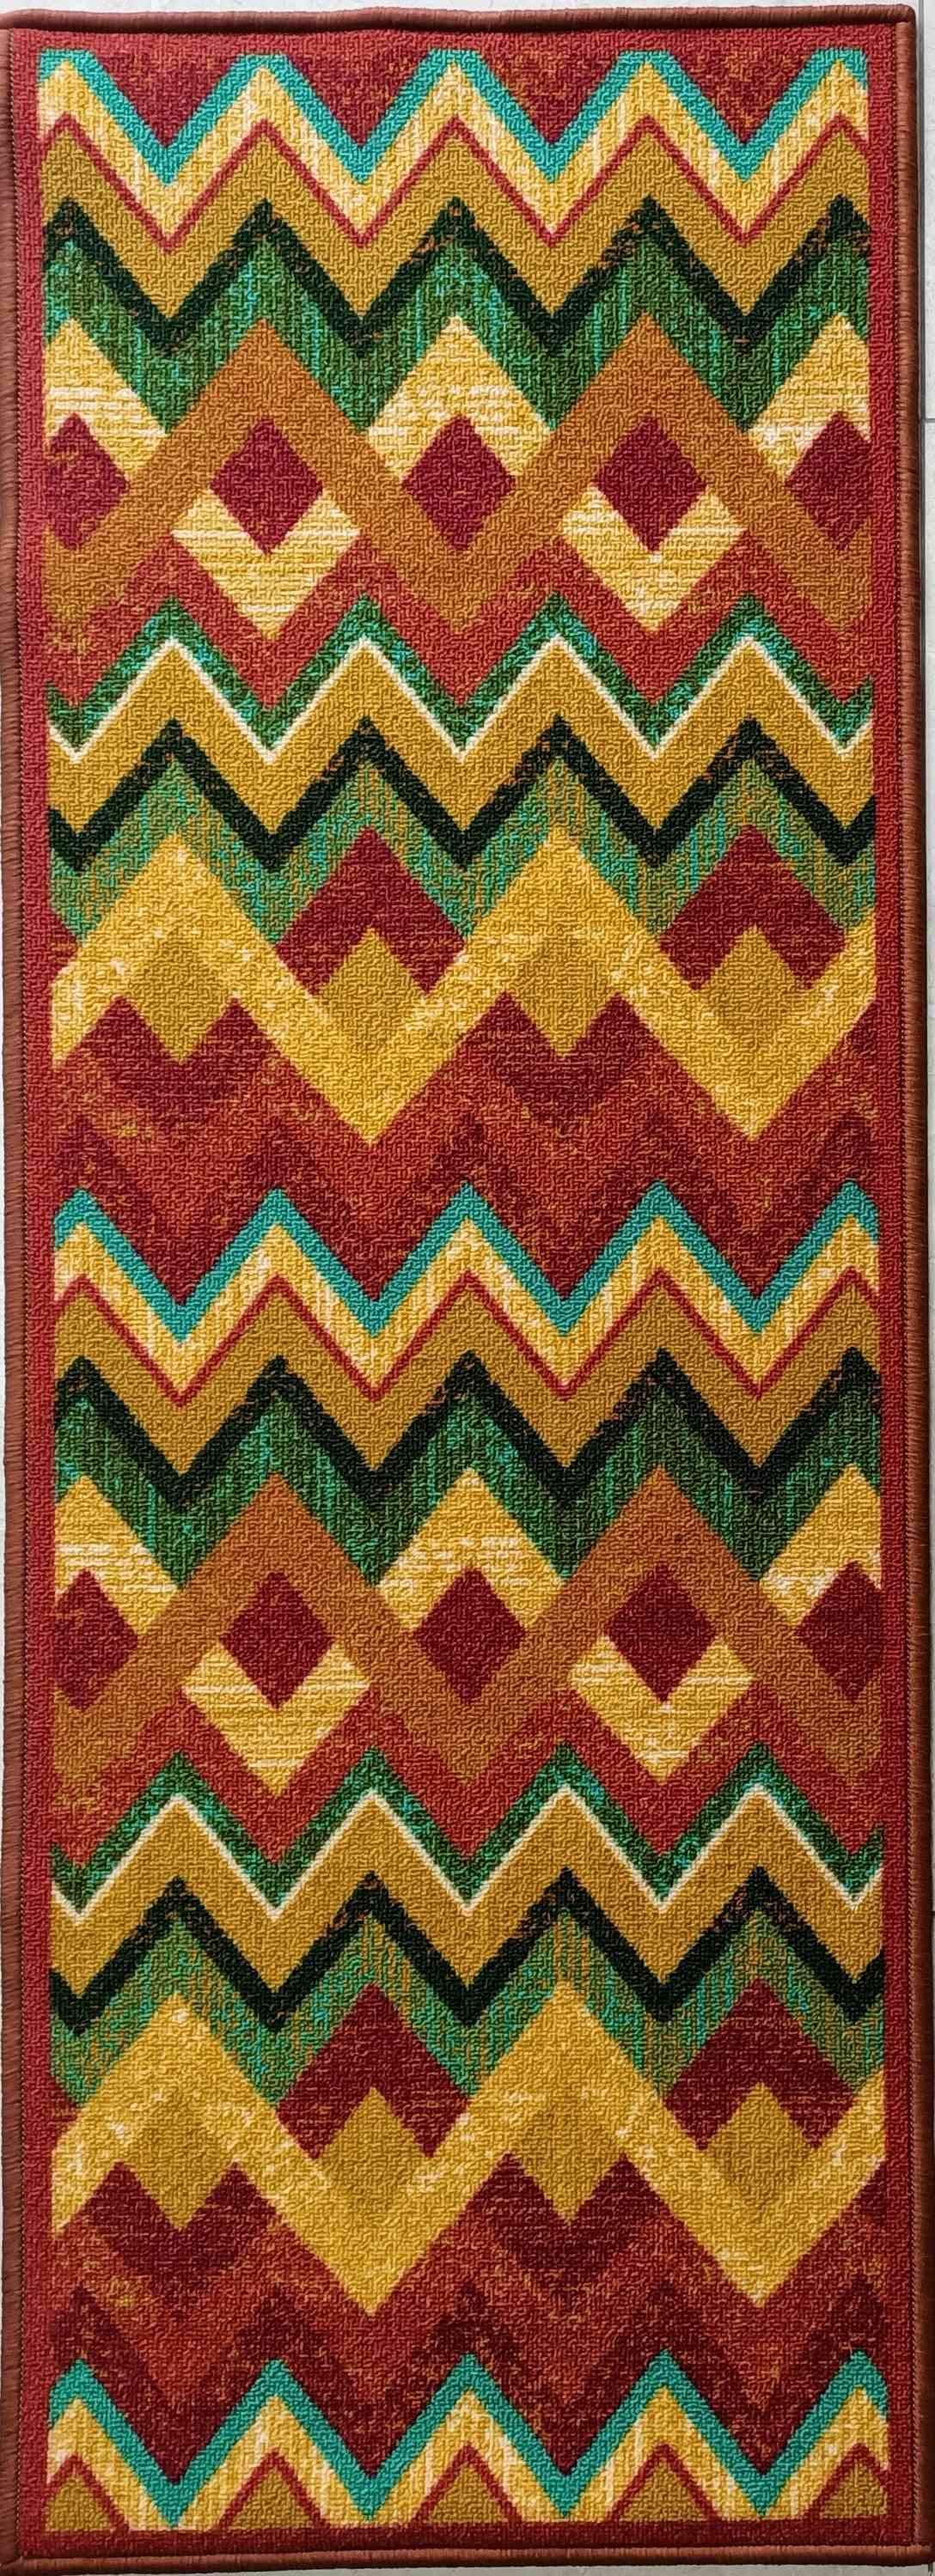 Rutschfester kleiner Teppich - Polyester-Teppich im Vintage-Stil